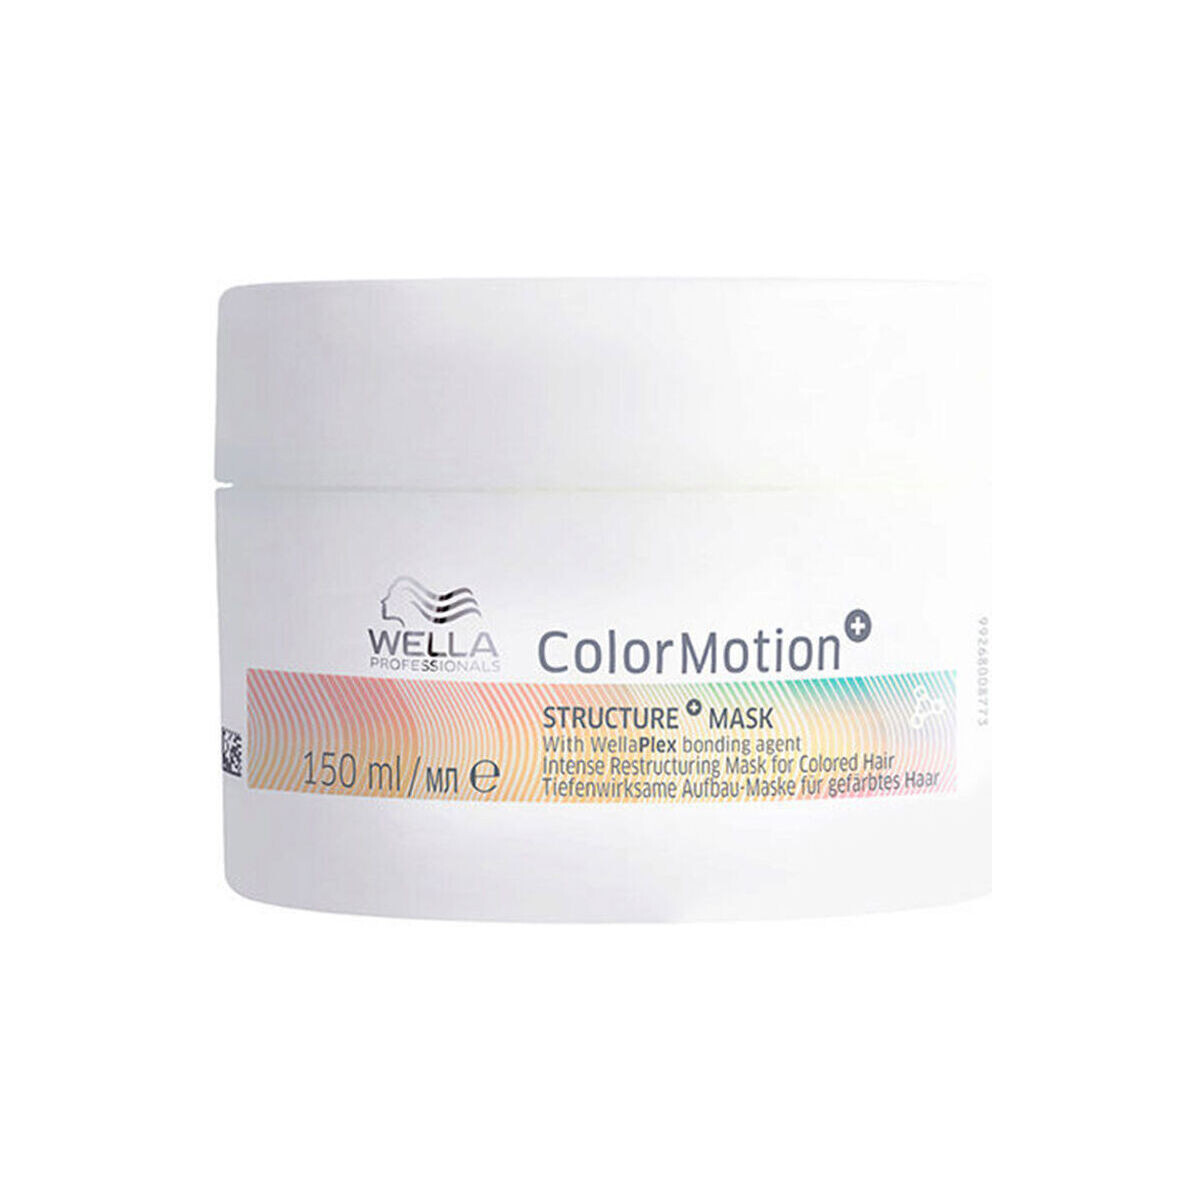 Belleza Acondicionador Wella Colormotion+ Mascarilla Structure +protección Del Color Cabello 